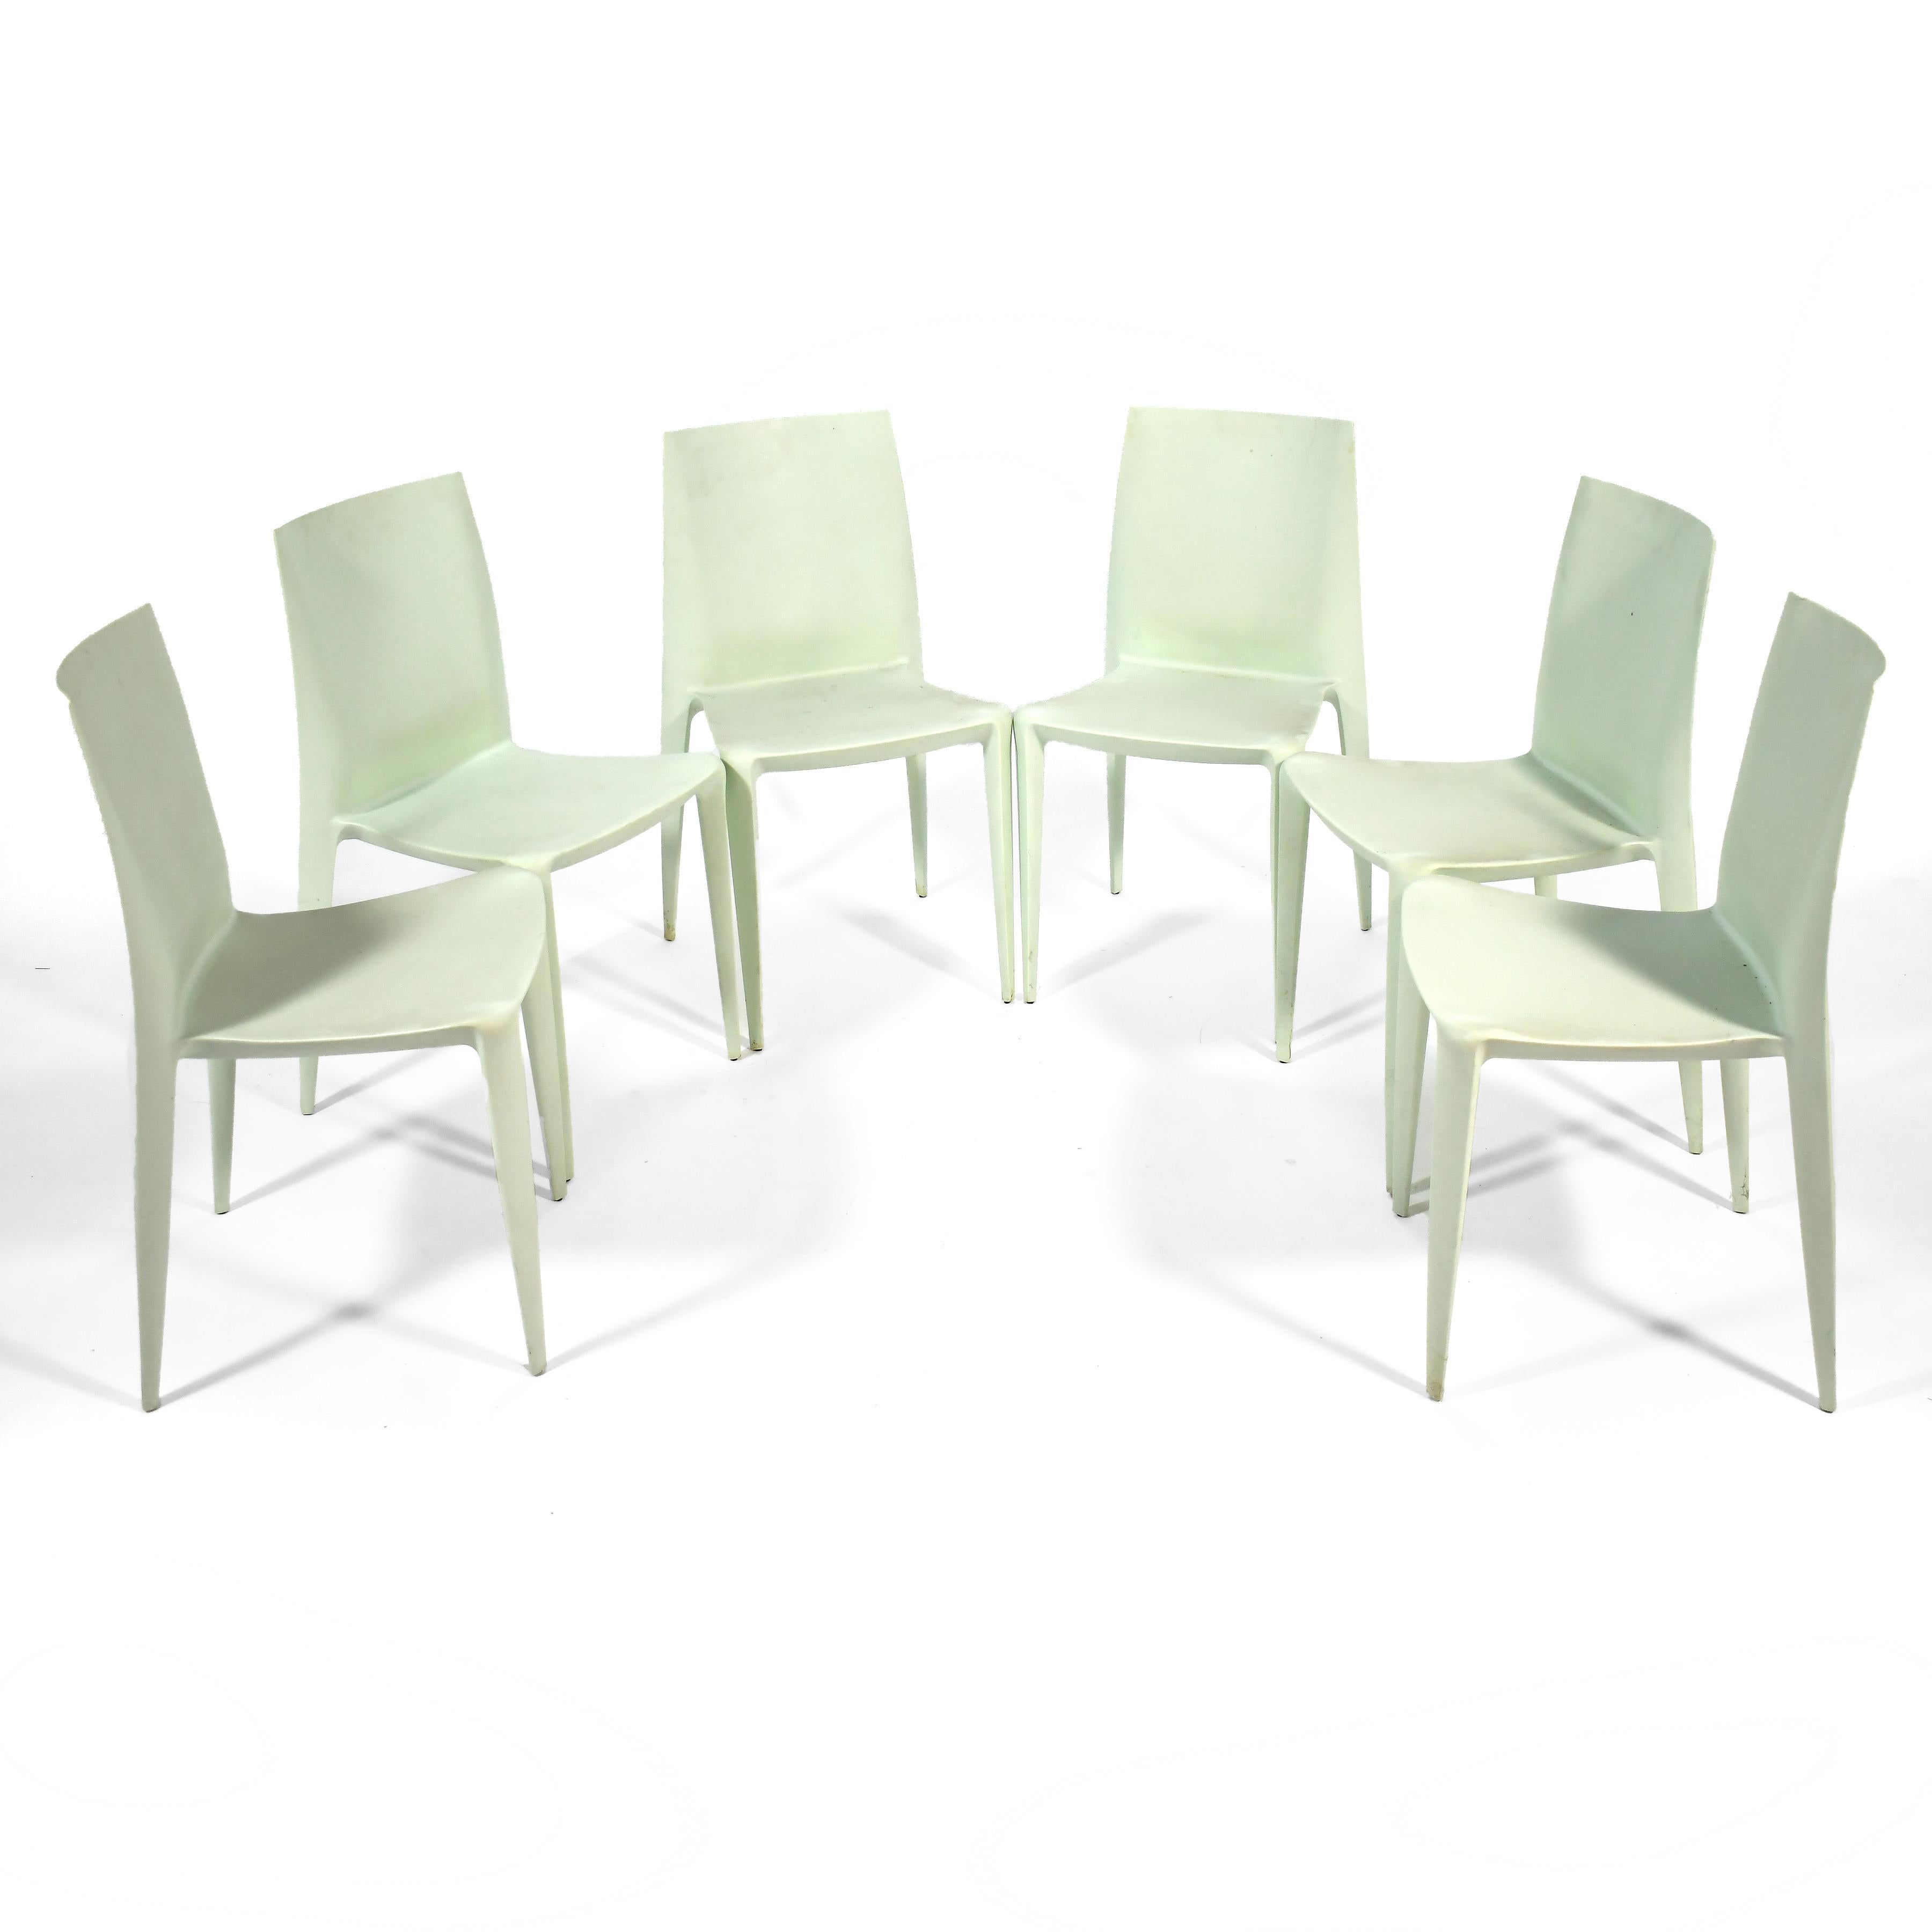 Der Heller Bellini Stuhl wurde 1998 entworfen und 2001 mit dem Compasso d'Oro für sein innovatives Design und seine Technik ausgezeichnet. Leicht, stabil, stapelbar und mit flexibler Rückseite. Die Konstruktion aus glasfaserverstärktem Polypropylen